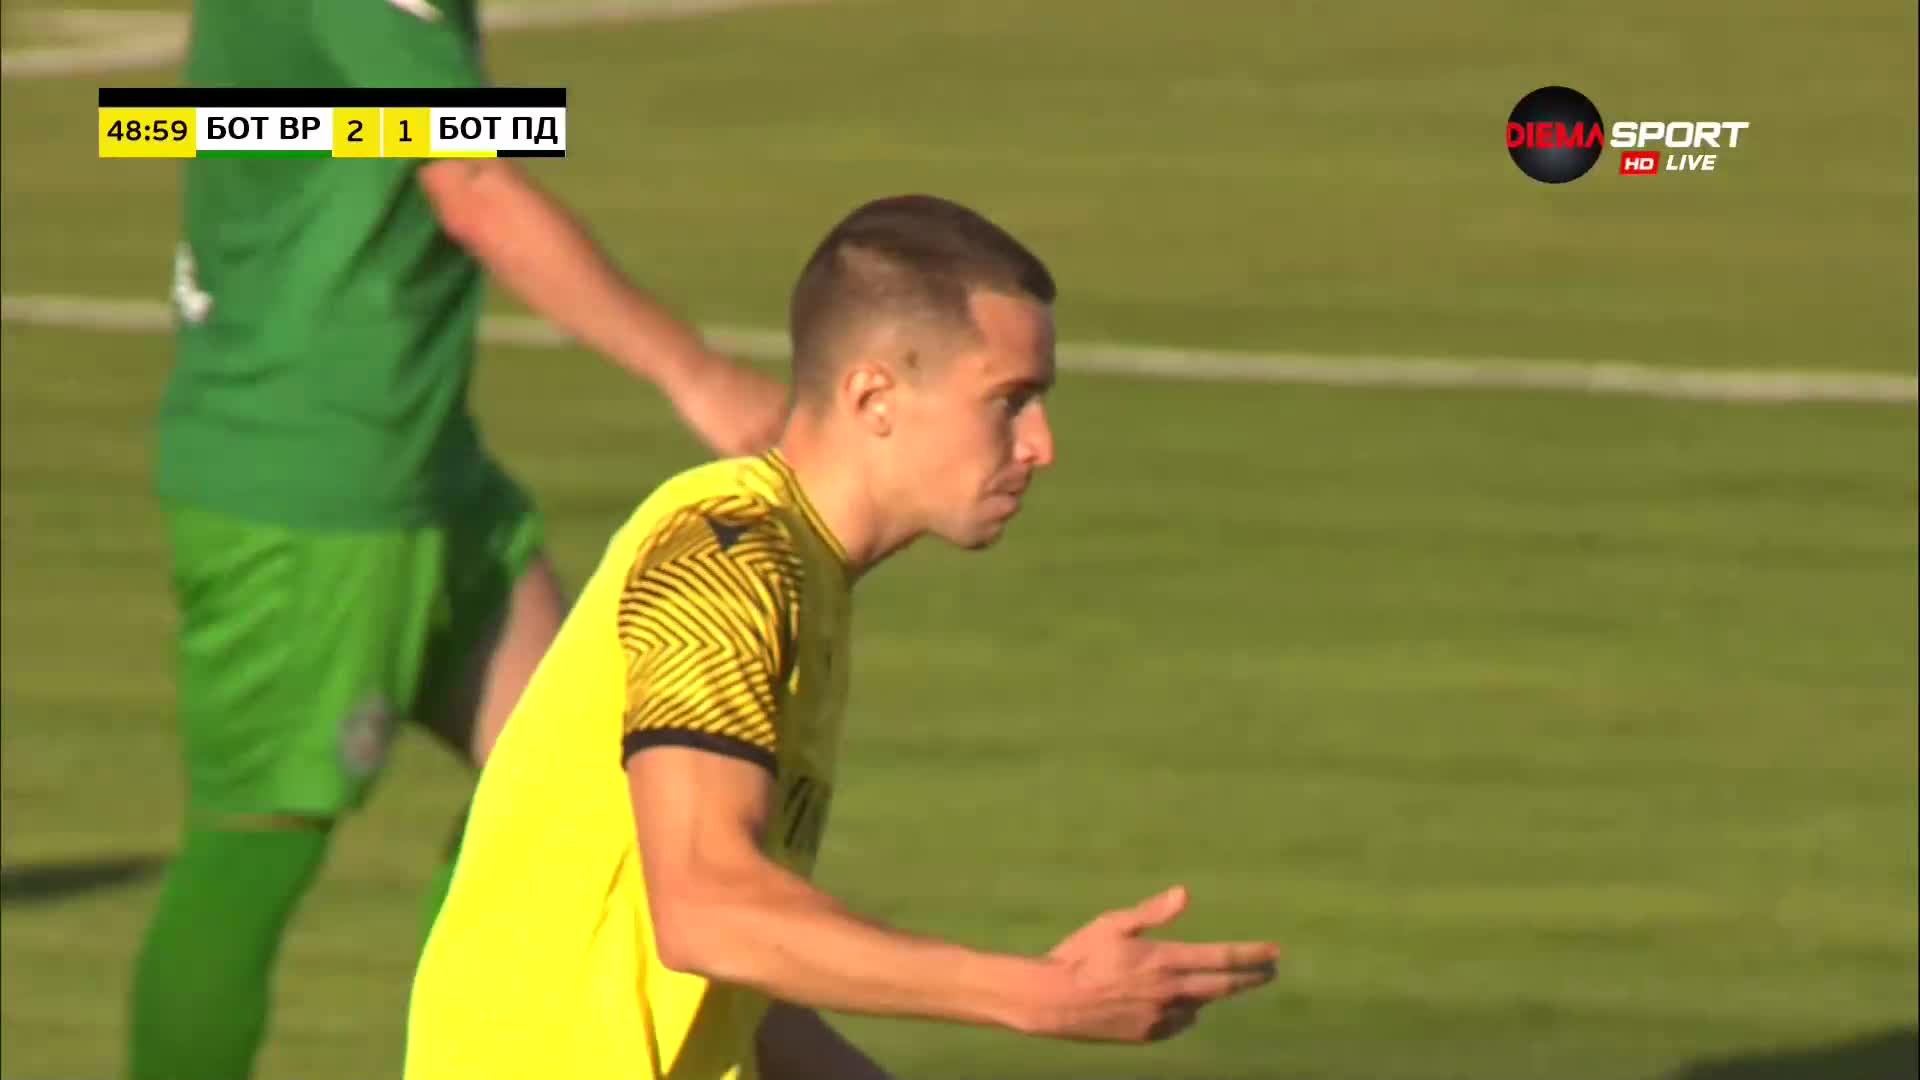 Мартин Секулич върна Ботев Пловдив в мача с дебютния си гол